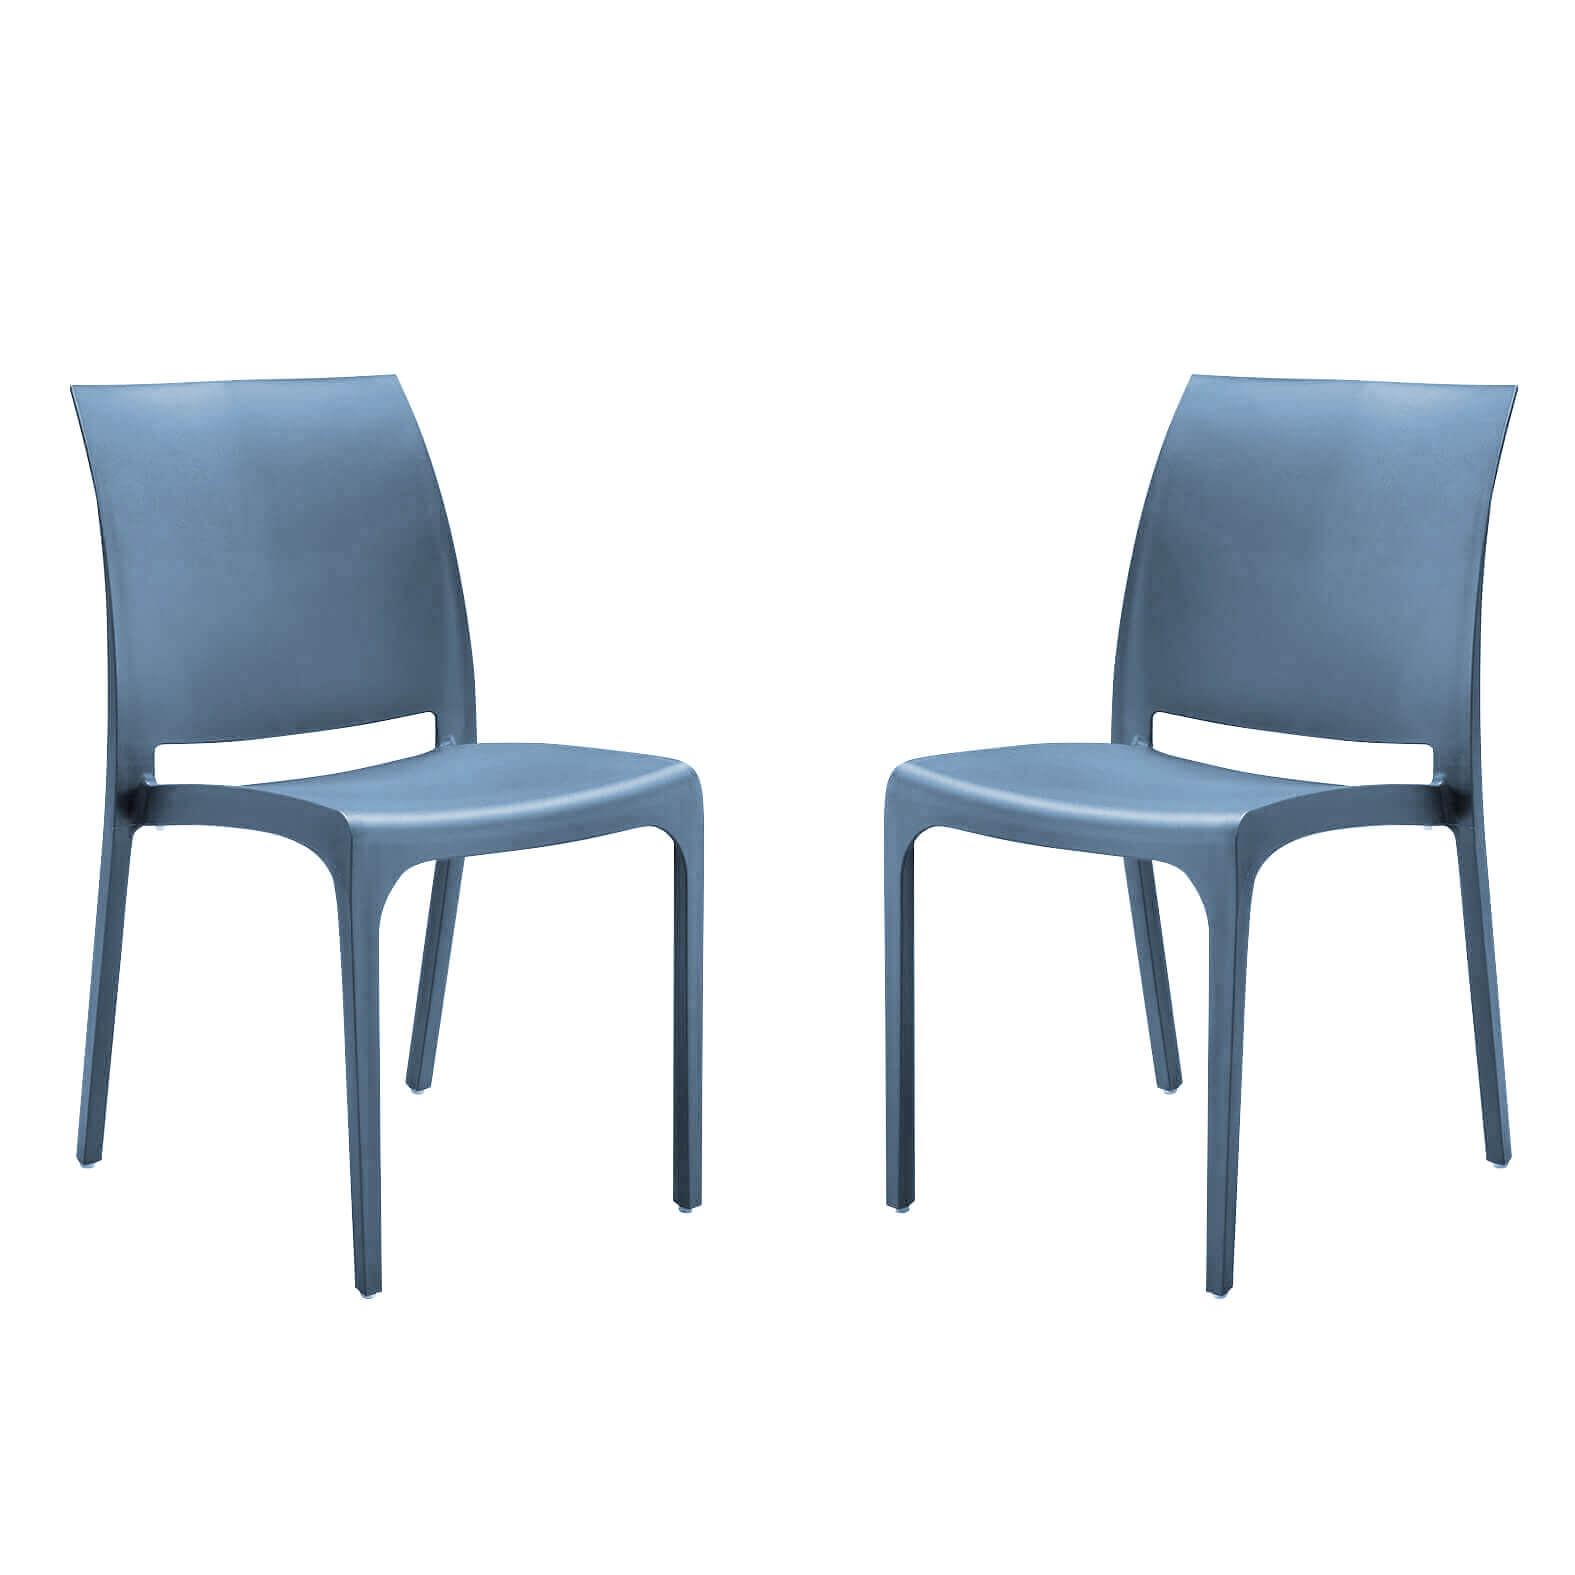 Milani Home set di 2 sedie poltrone da giardino in plastica design moderno colorata Blu Blu 46 x 80 x 54 cm